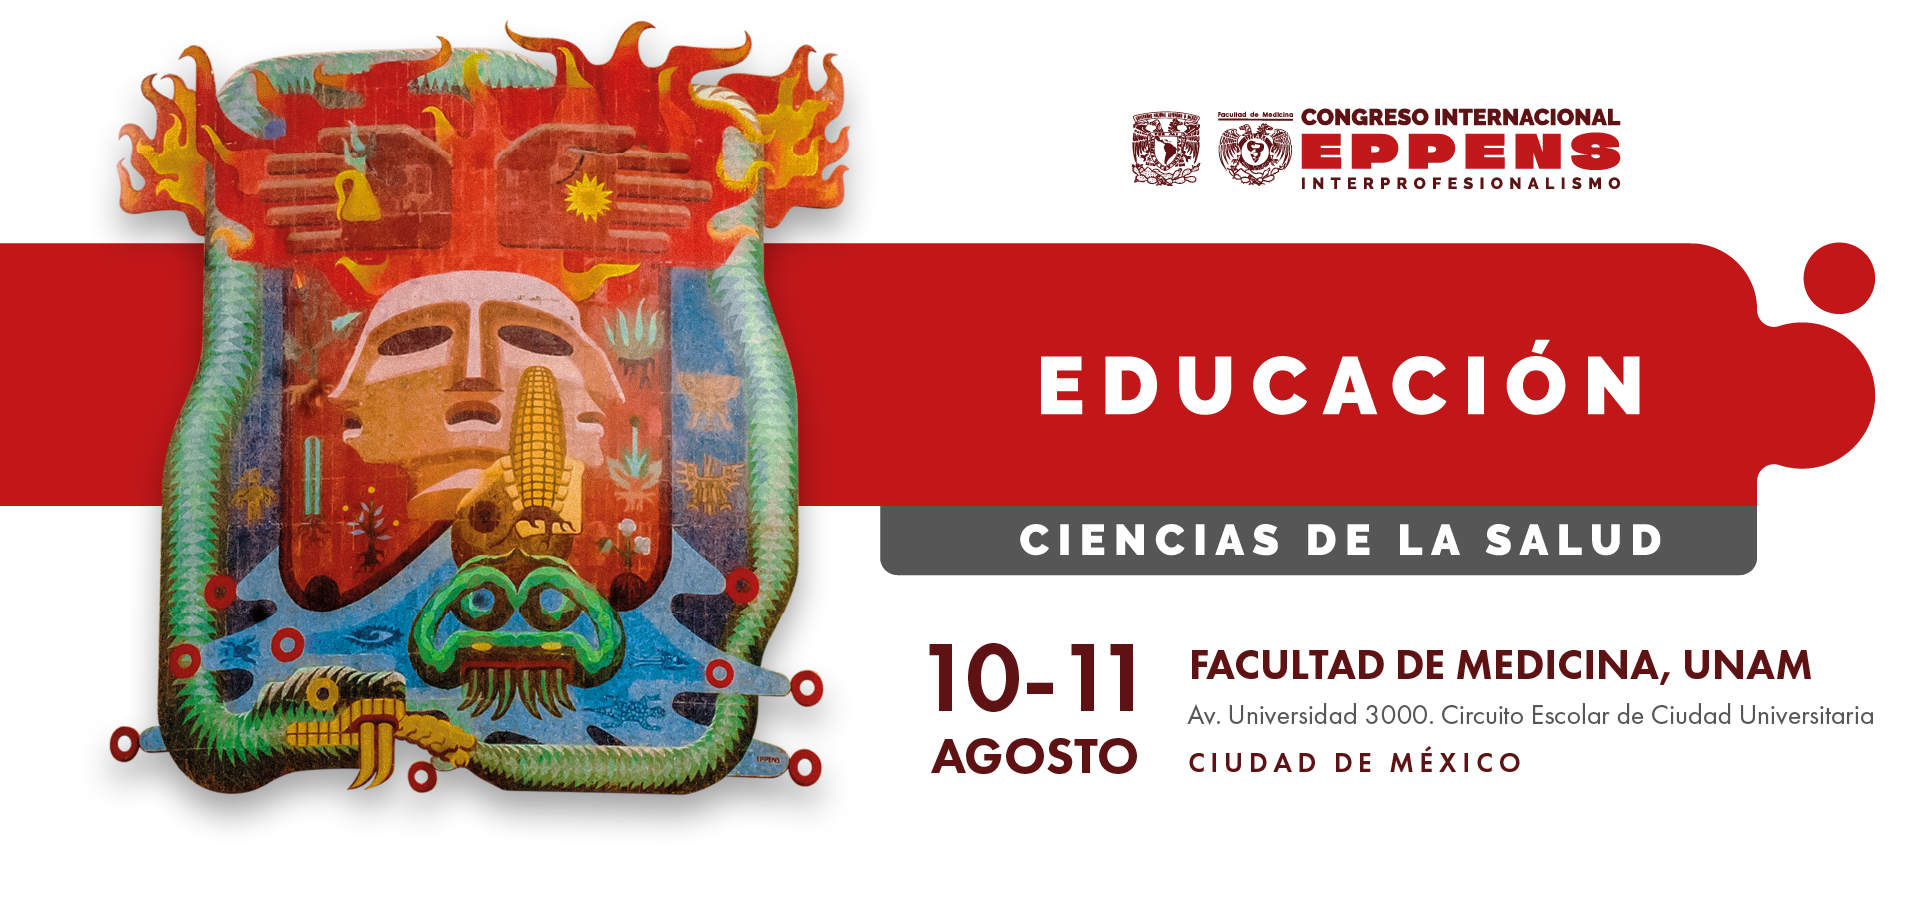 Encuentro Académico de Educación en Ciencias de la Salud parte del Congreso Internacional EPPENS Interprofesionalismo dado por la Facultad de Medicina, UNAM